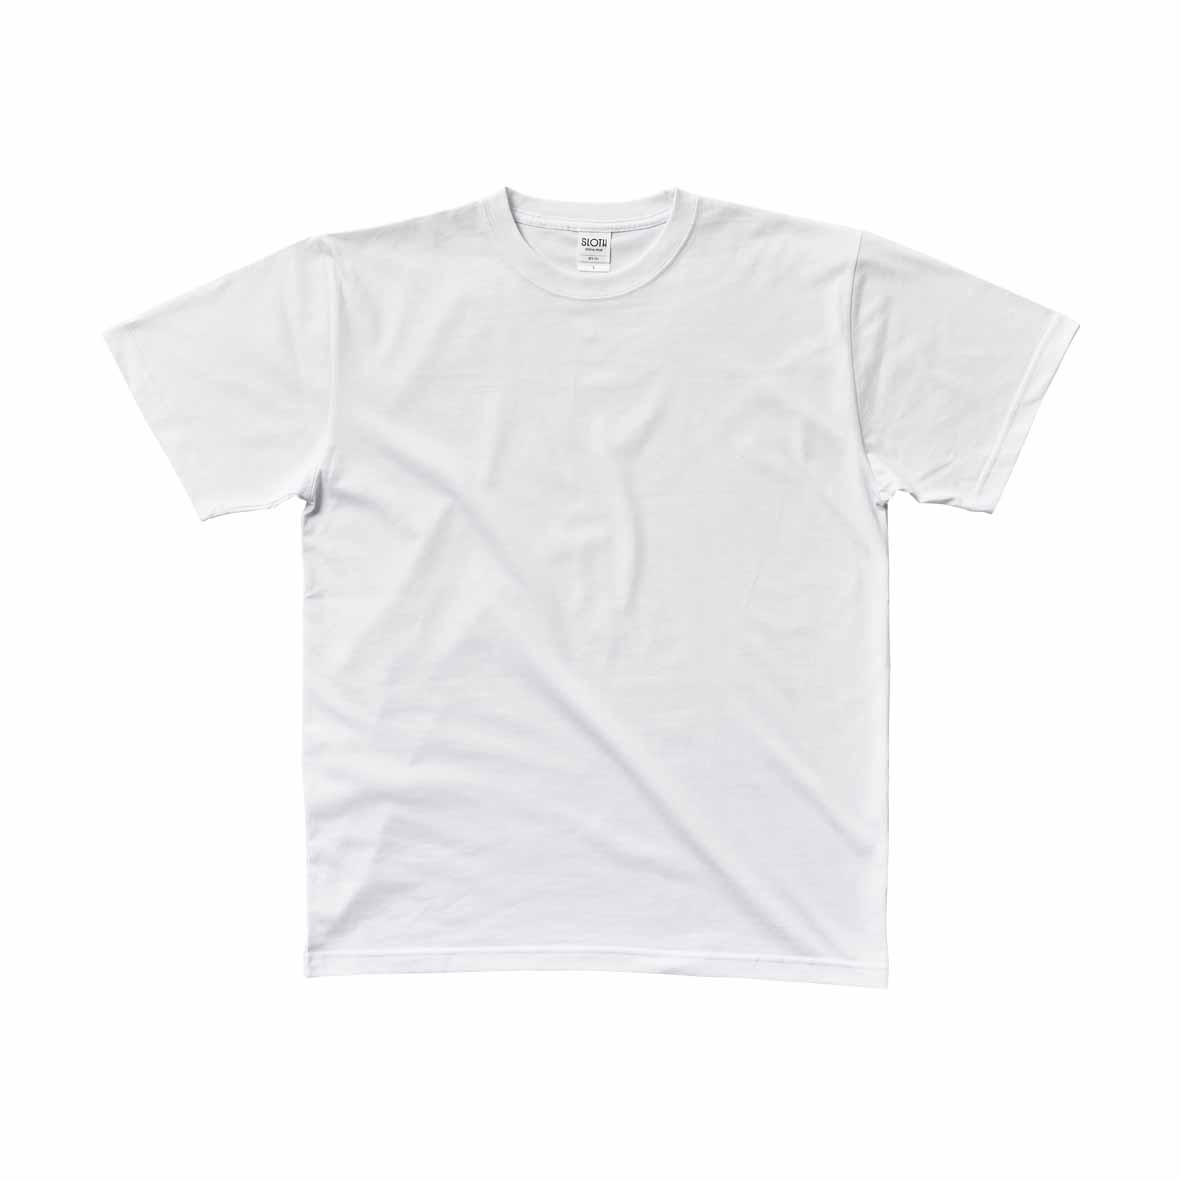 SLOTH スロス プレミアムファブリック Tシャツ <ペットボトルリサイクル> (品番ST1101)